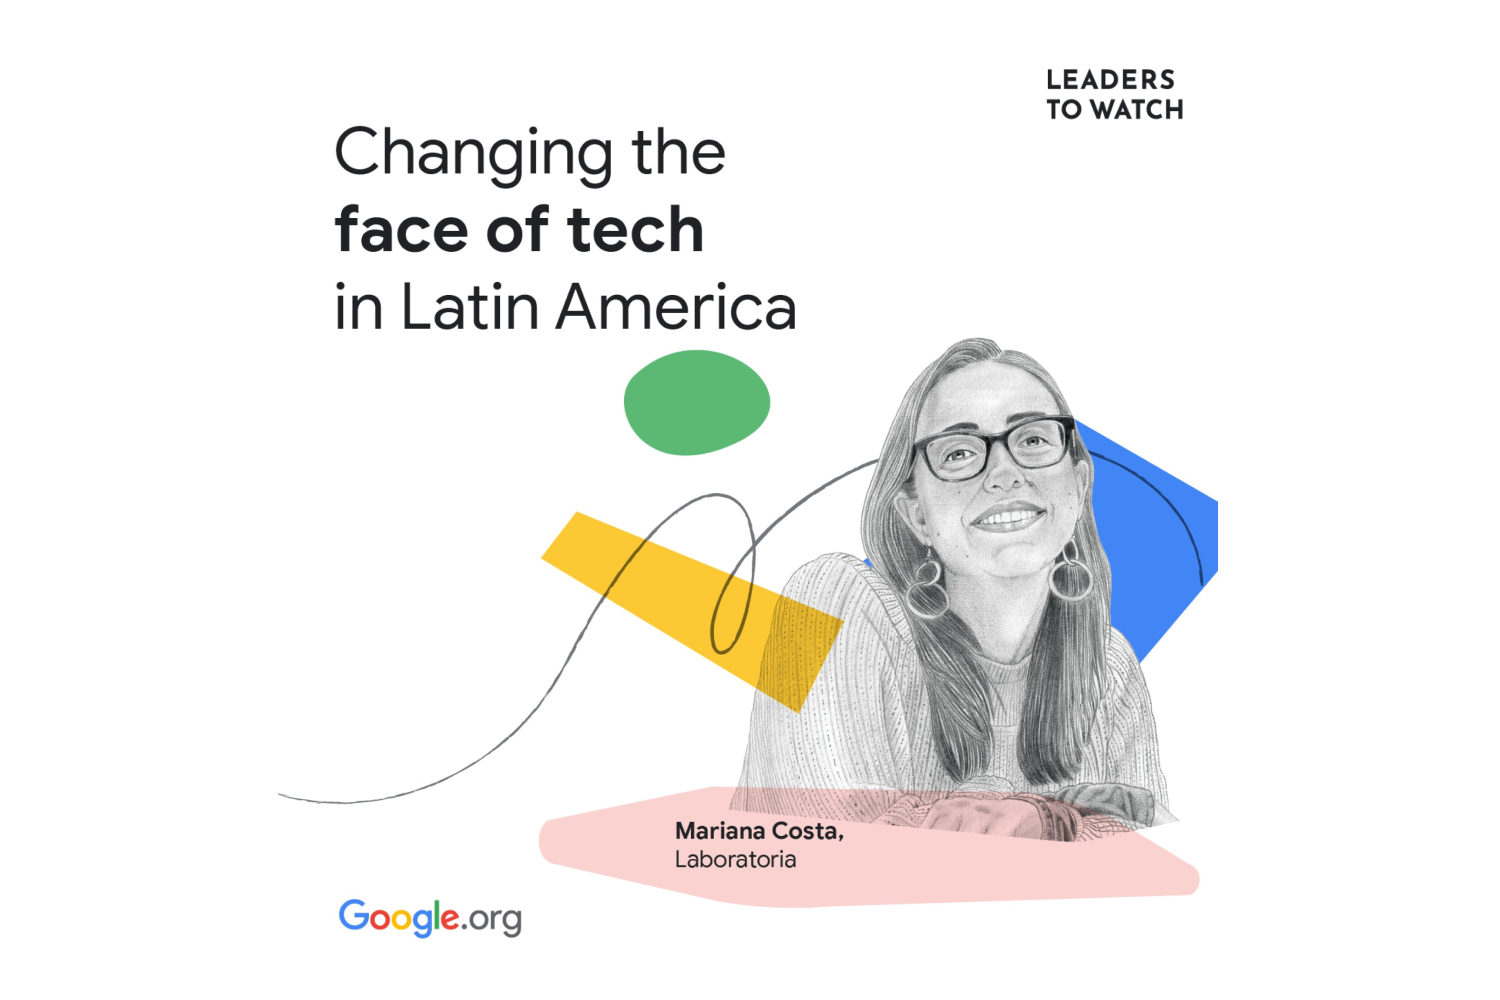 Mariana Costa es la única líder latinoamericana reconocida por Google.org como Líder a seguir este 2022.